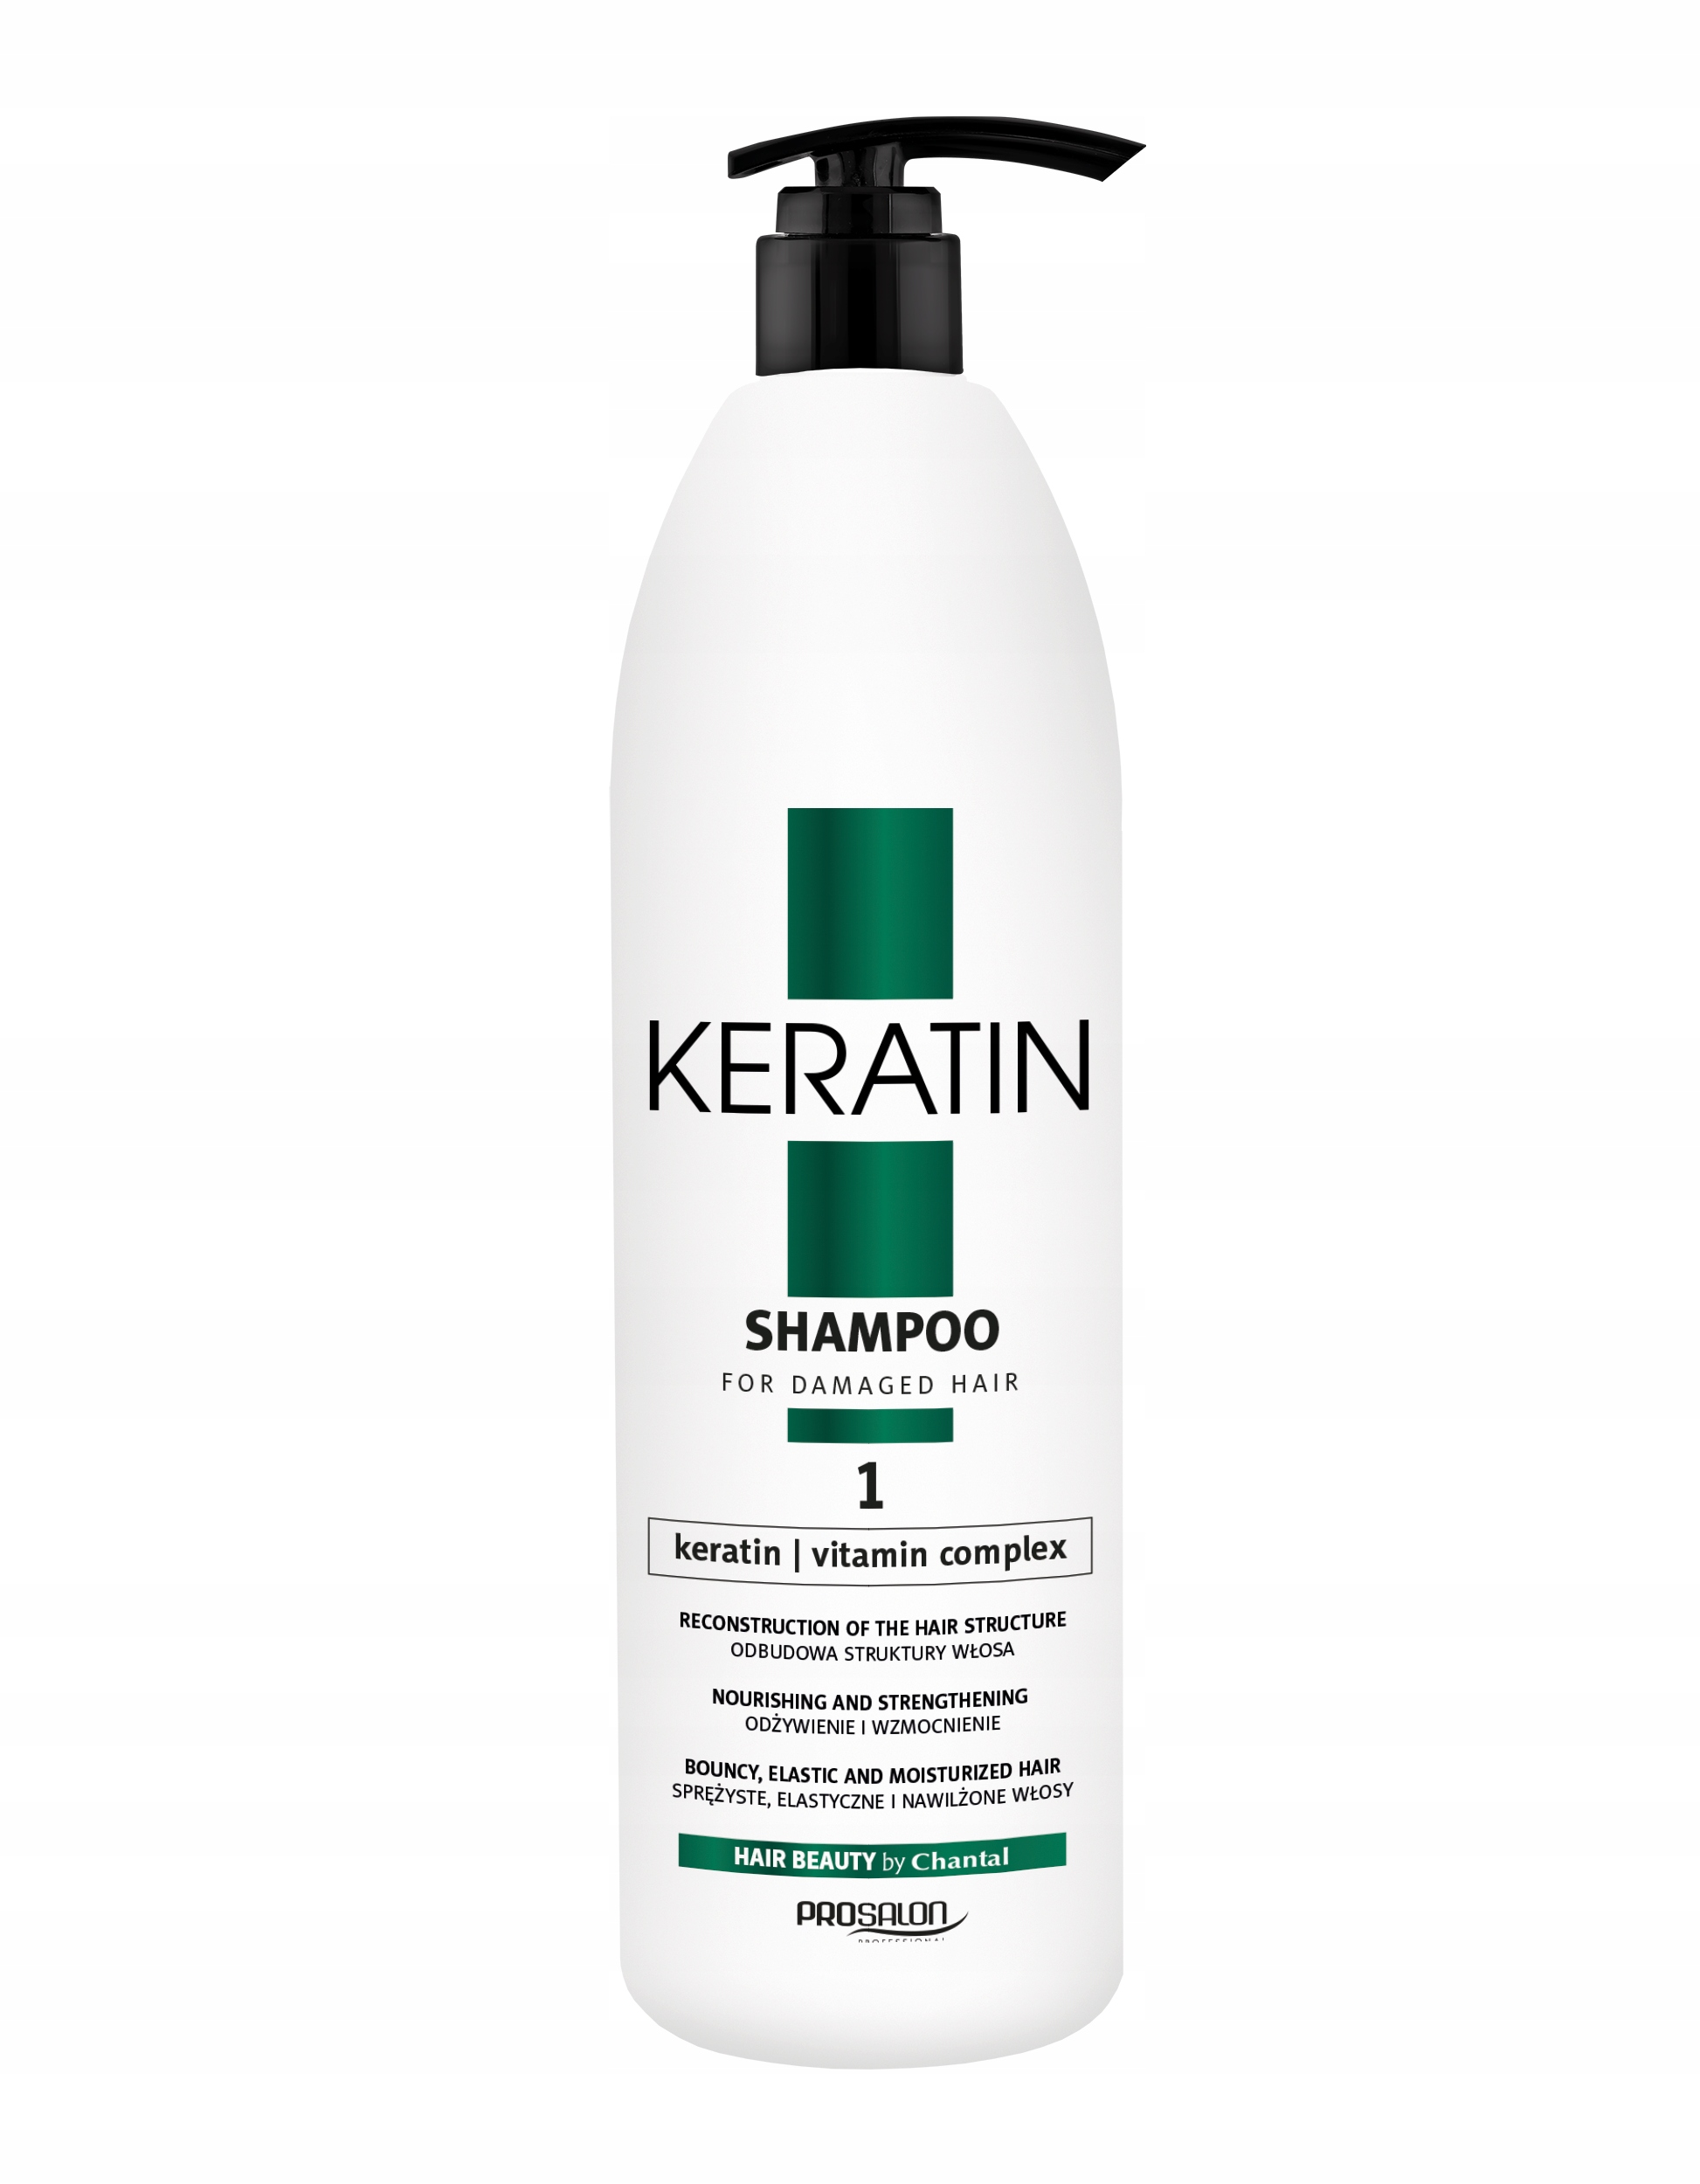 szampon i odżywka po keratynowym prostowaniu włosów prosalon